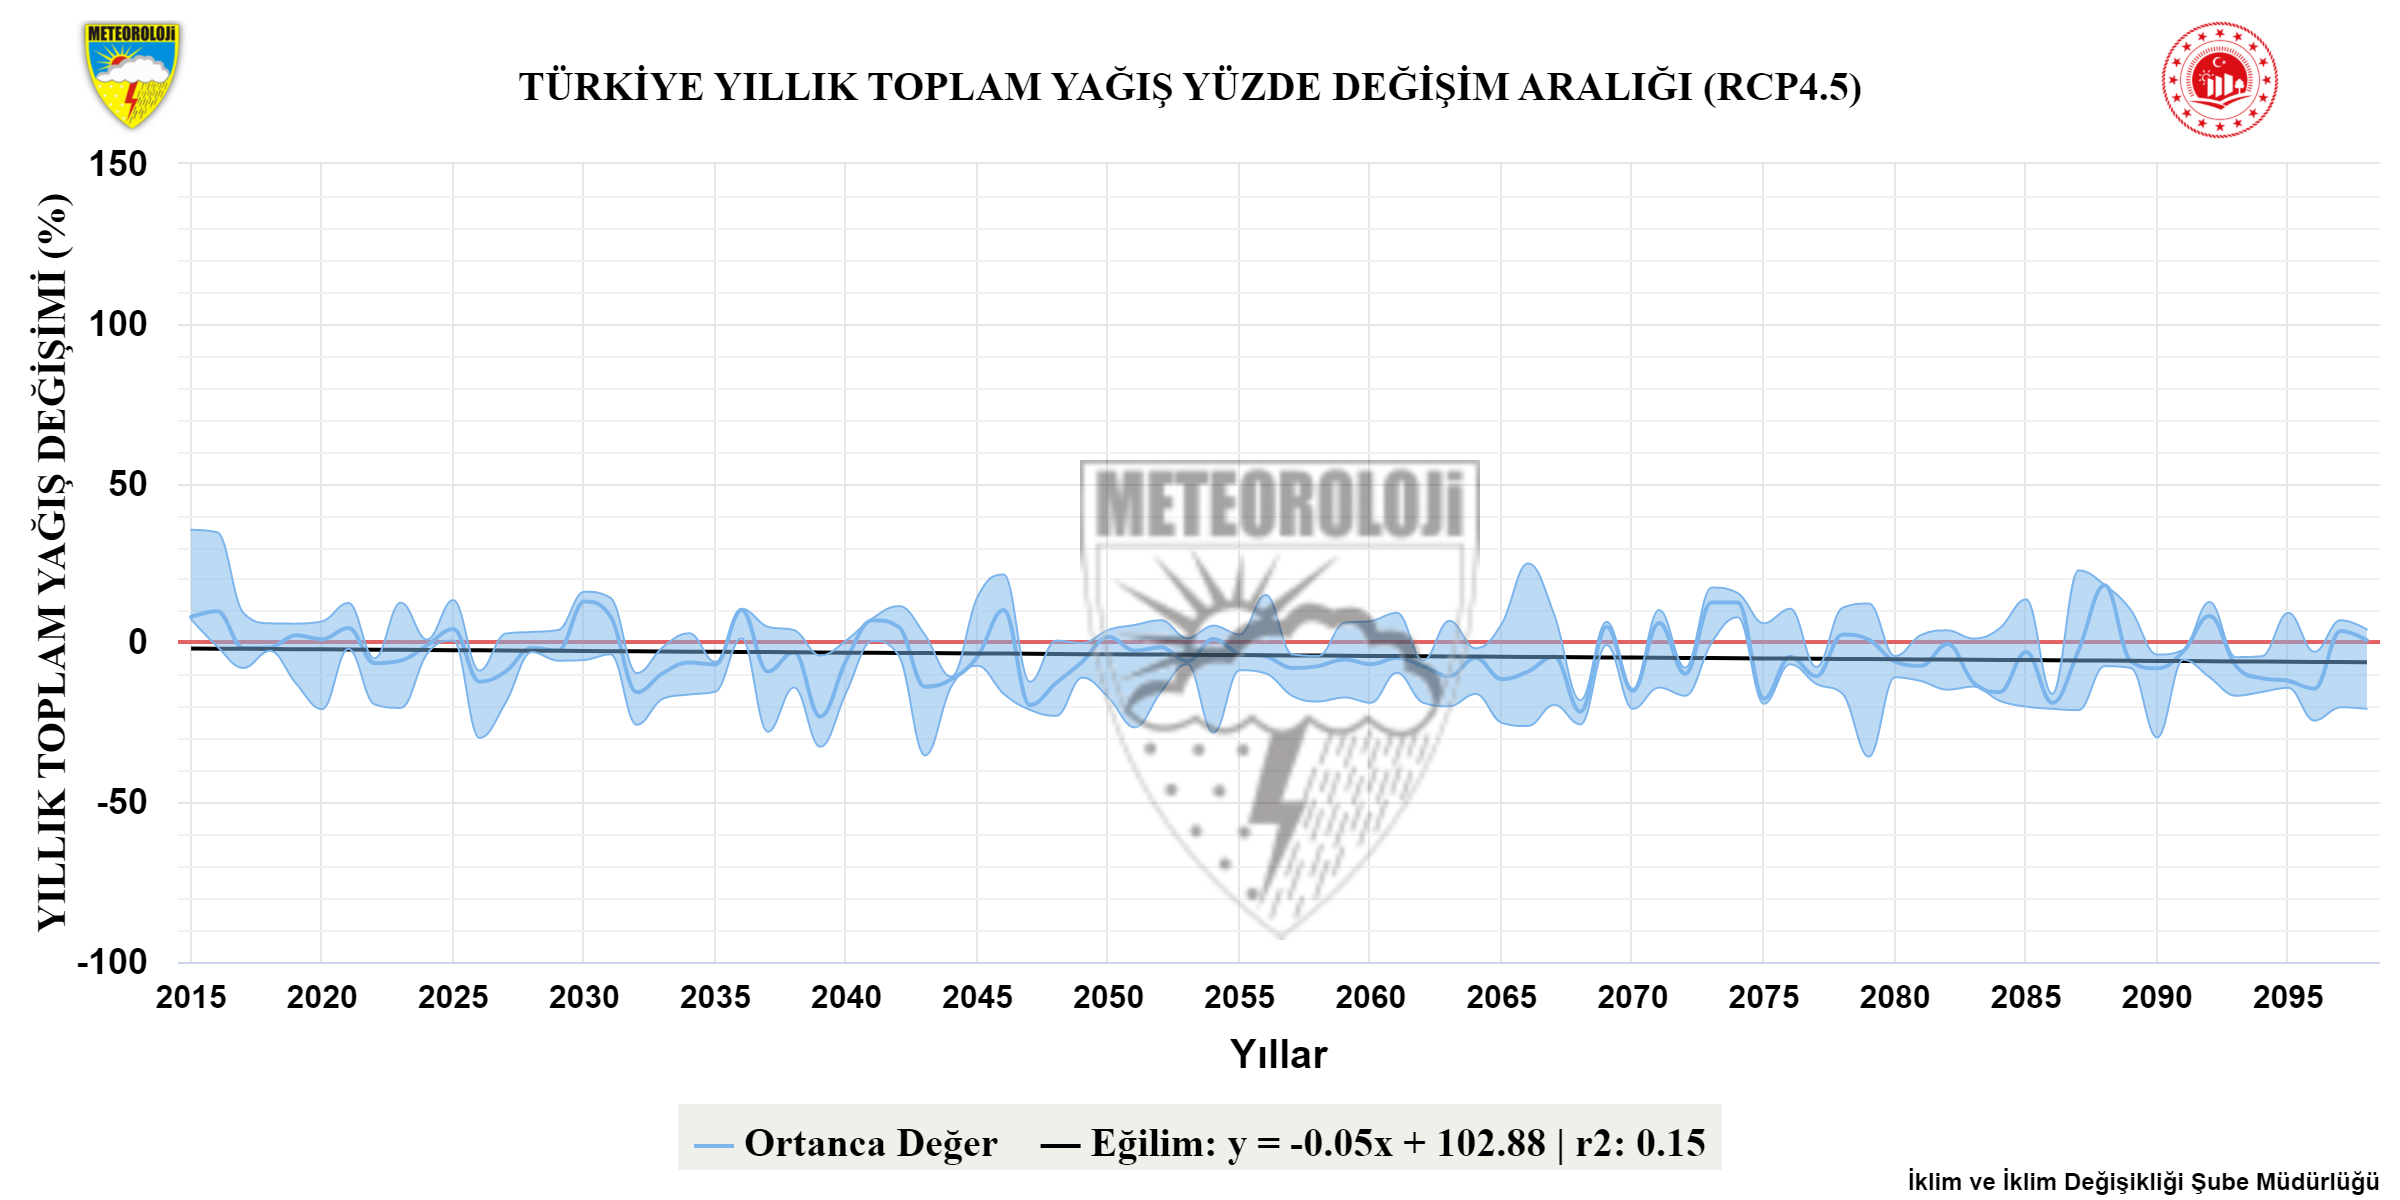 RCP4.5'e göre Türkiye yıllık toplam yağış anomalisi bandı projeksiyonları